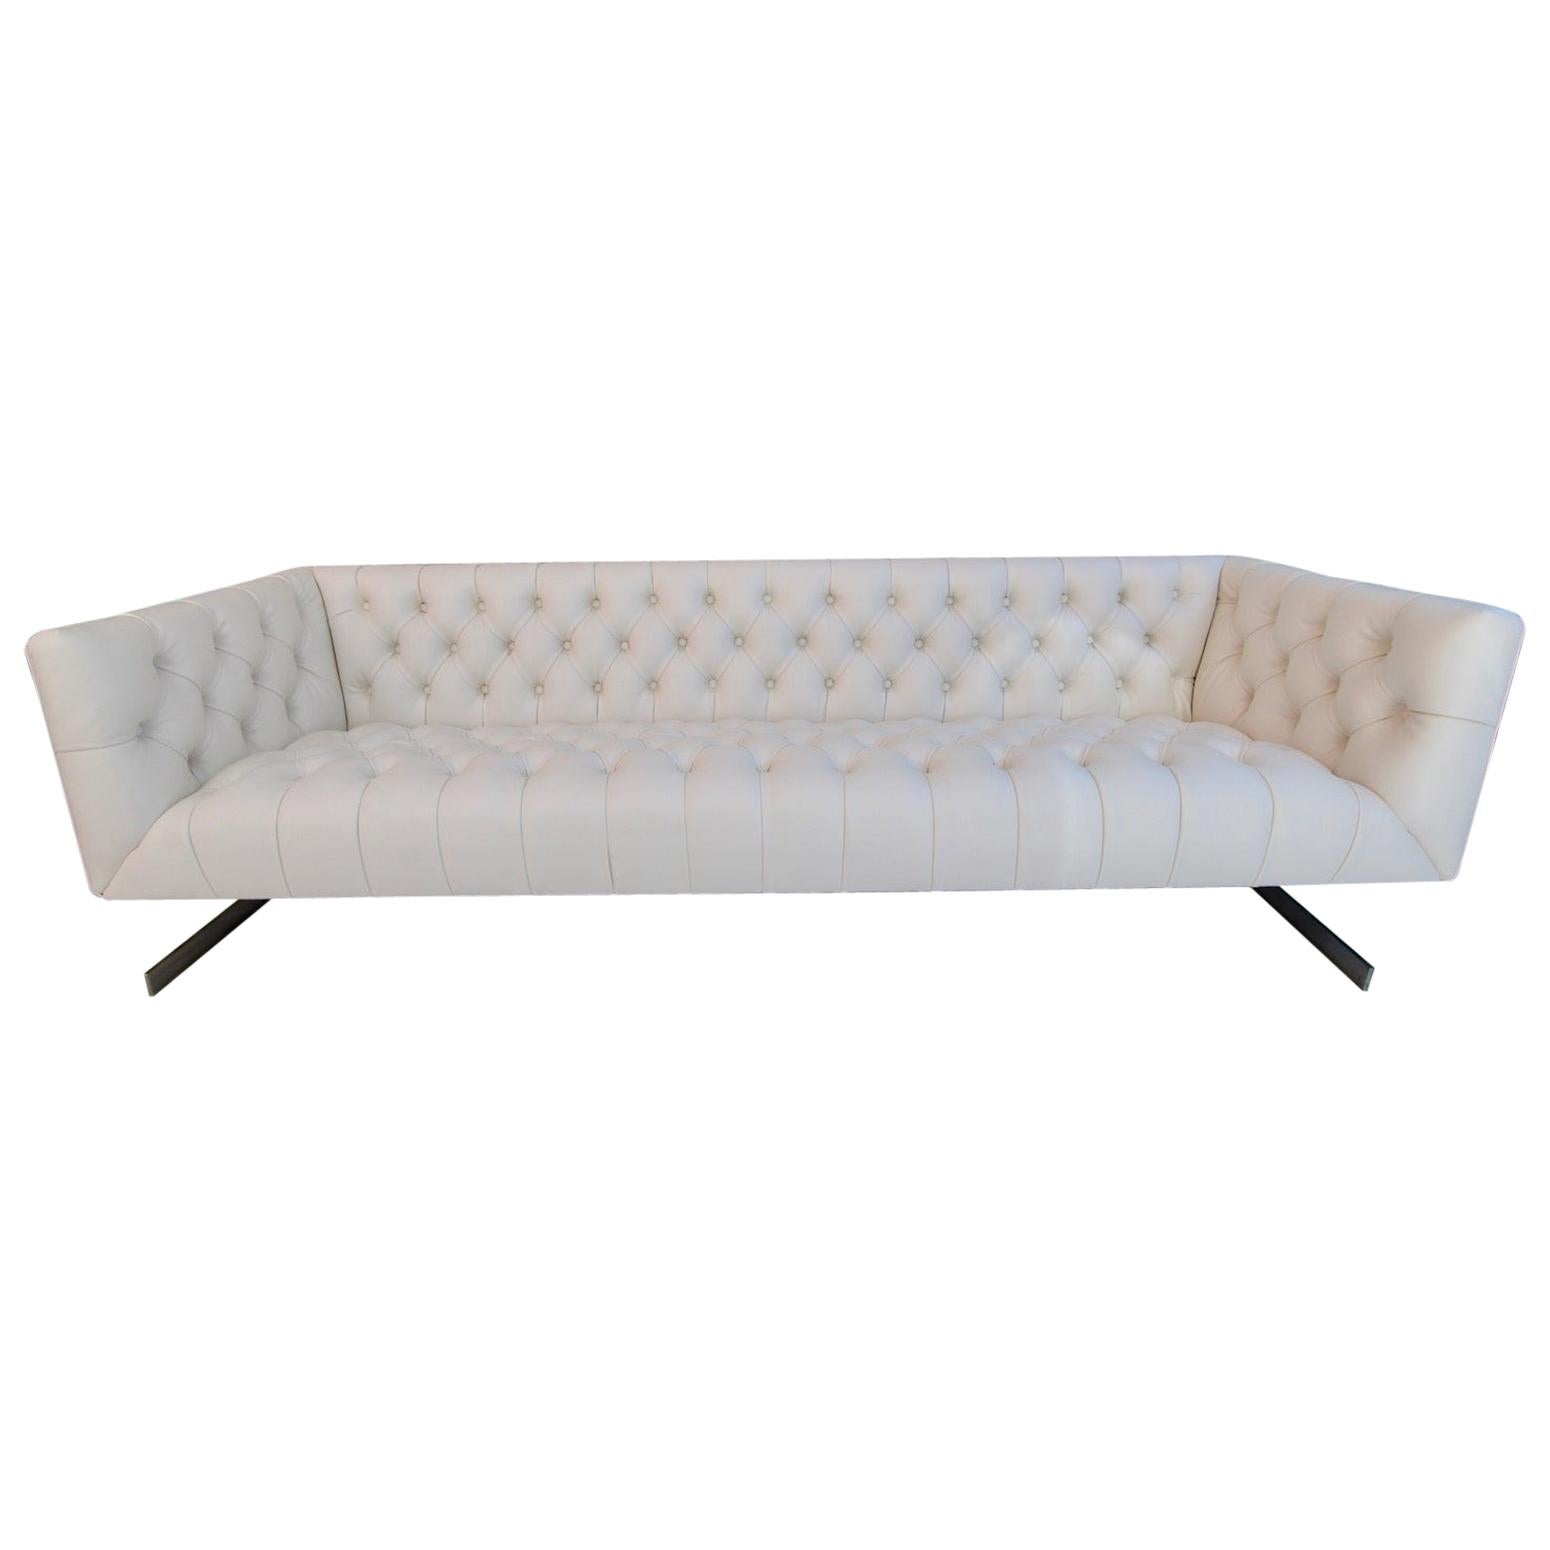 Seltenes und sexy großes, freitragendes Sofa im Chesterfield-Stil mit freitragendem Design